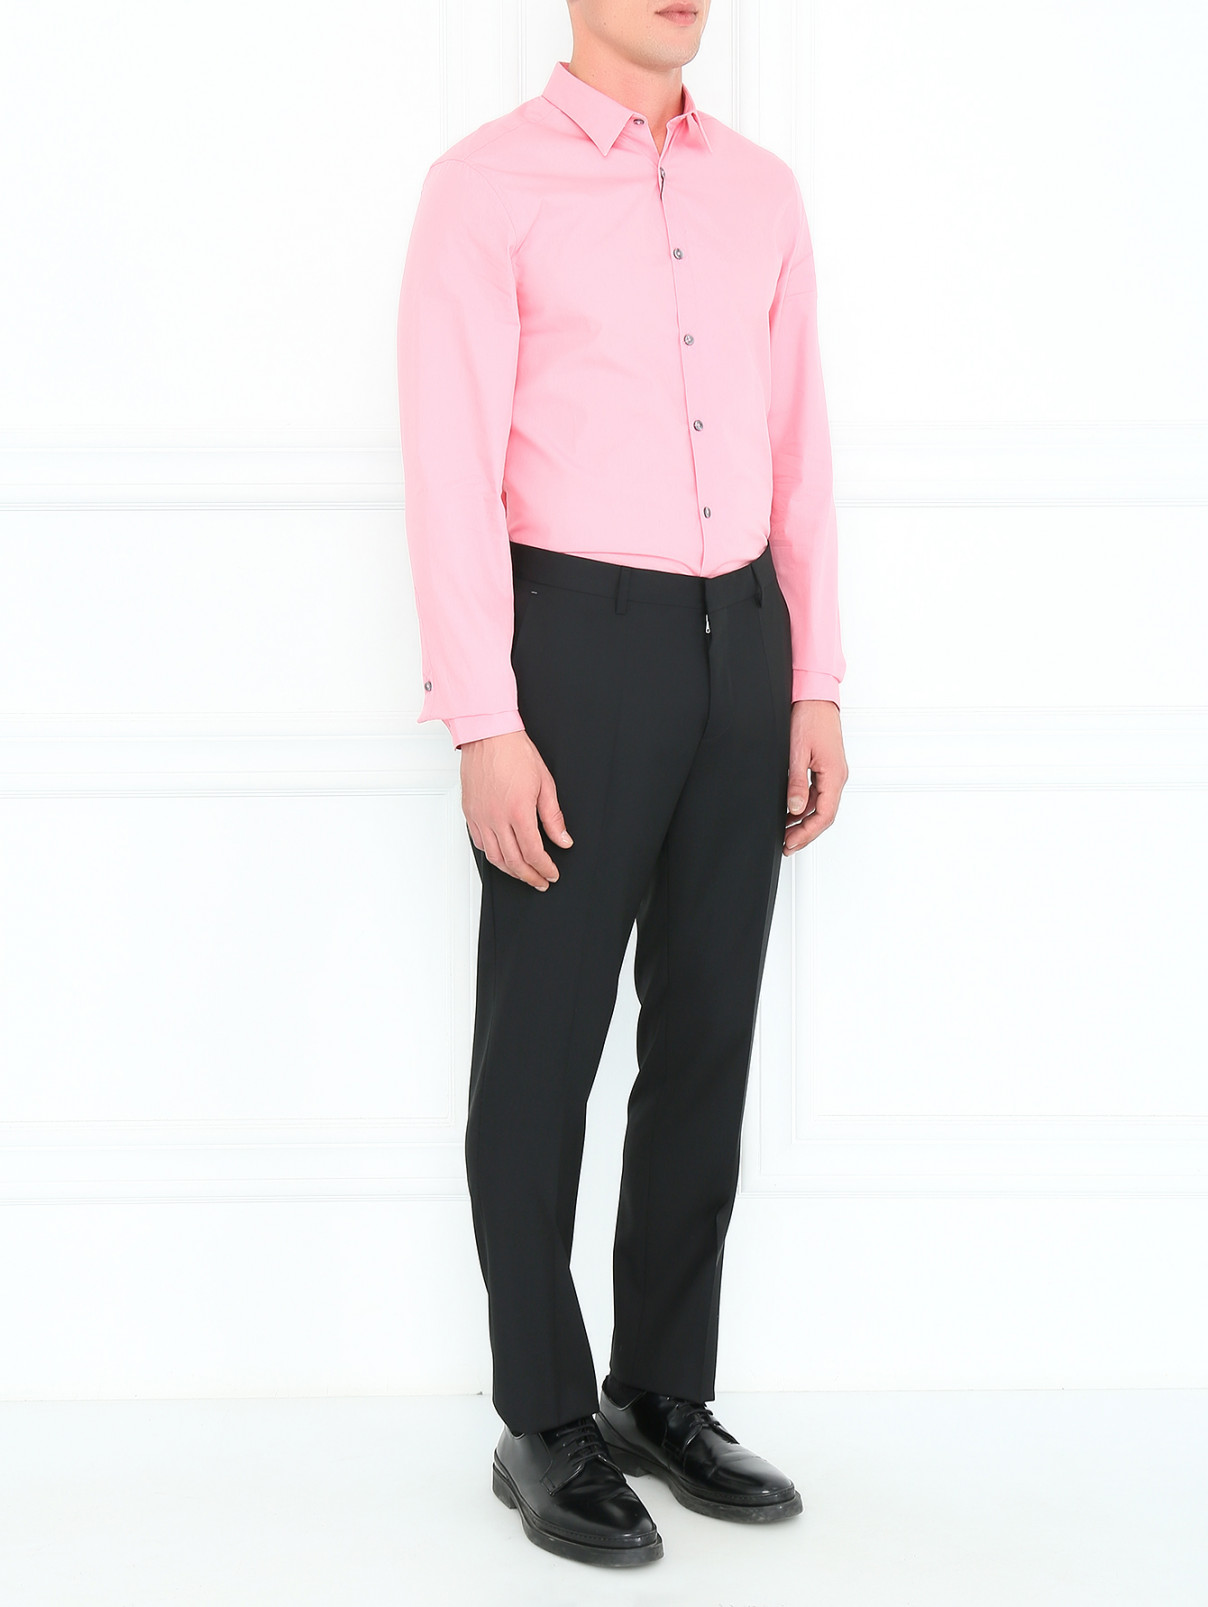 Однотонная рубашка из хлопка Paul Smith  –  Модель Общий вид  – Цвет:  Розовый